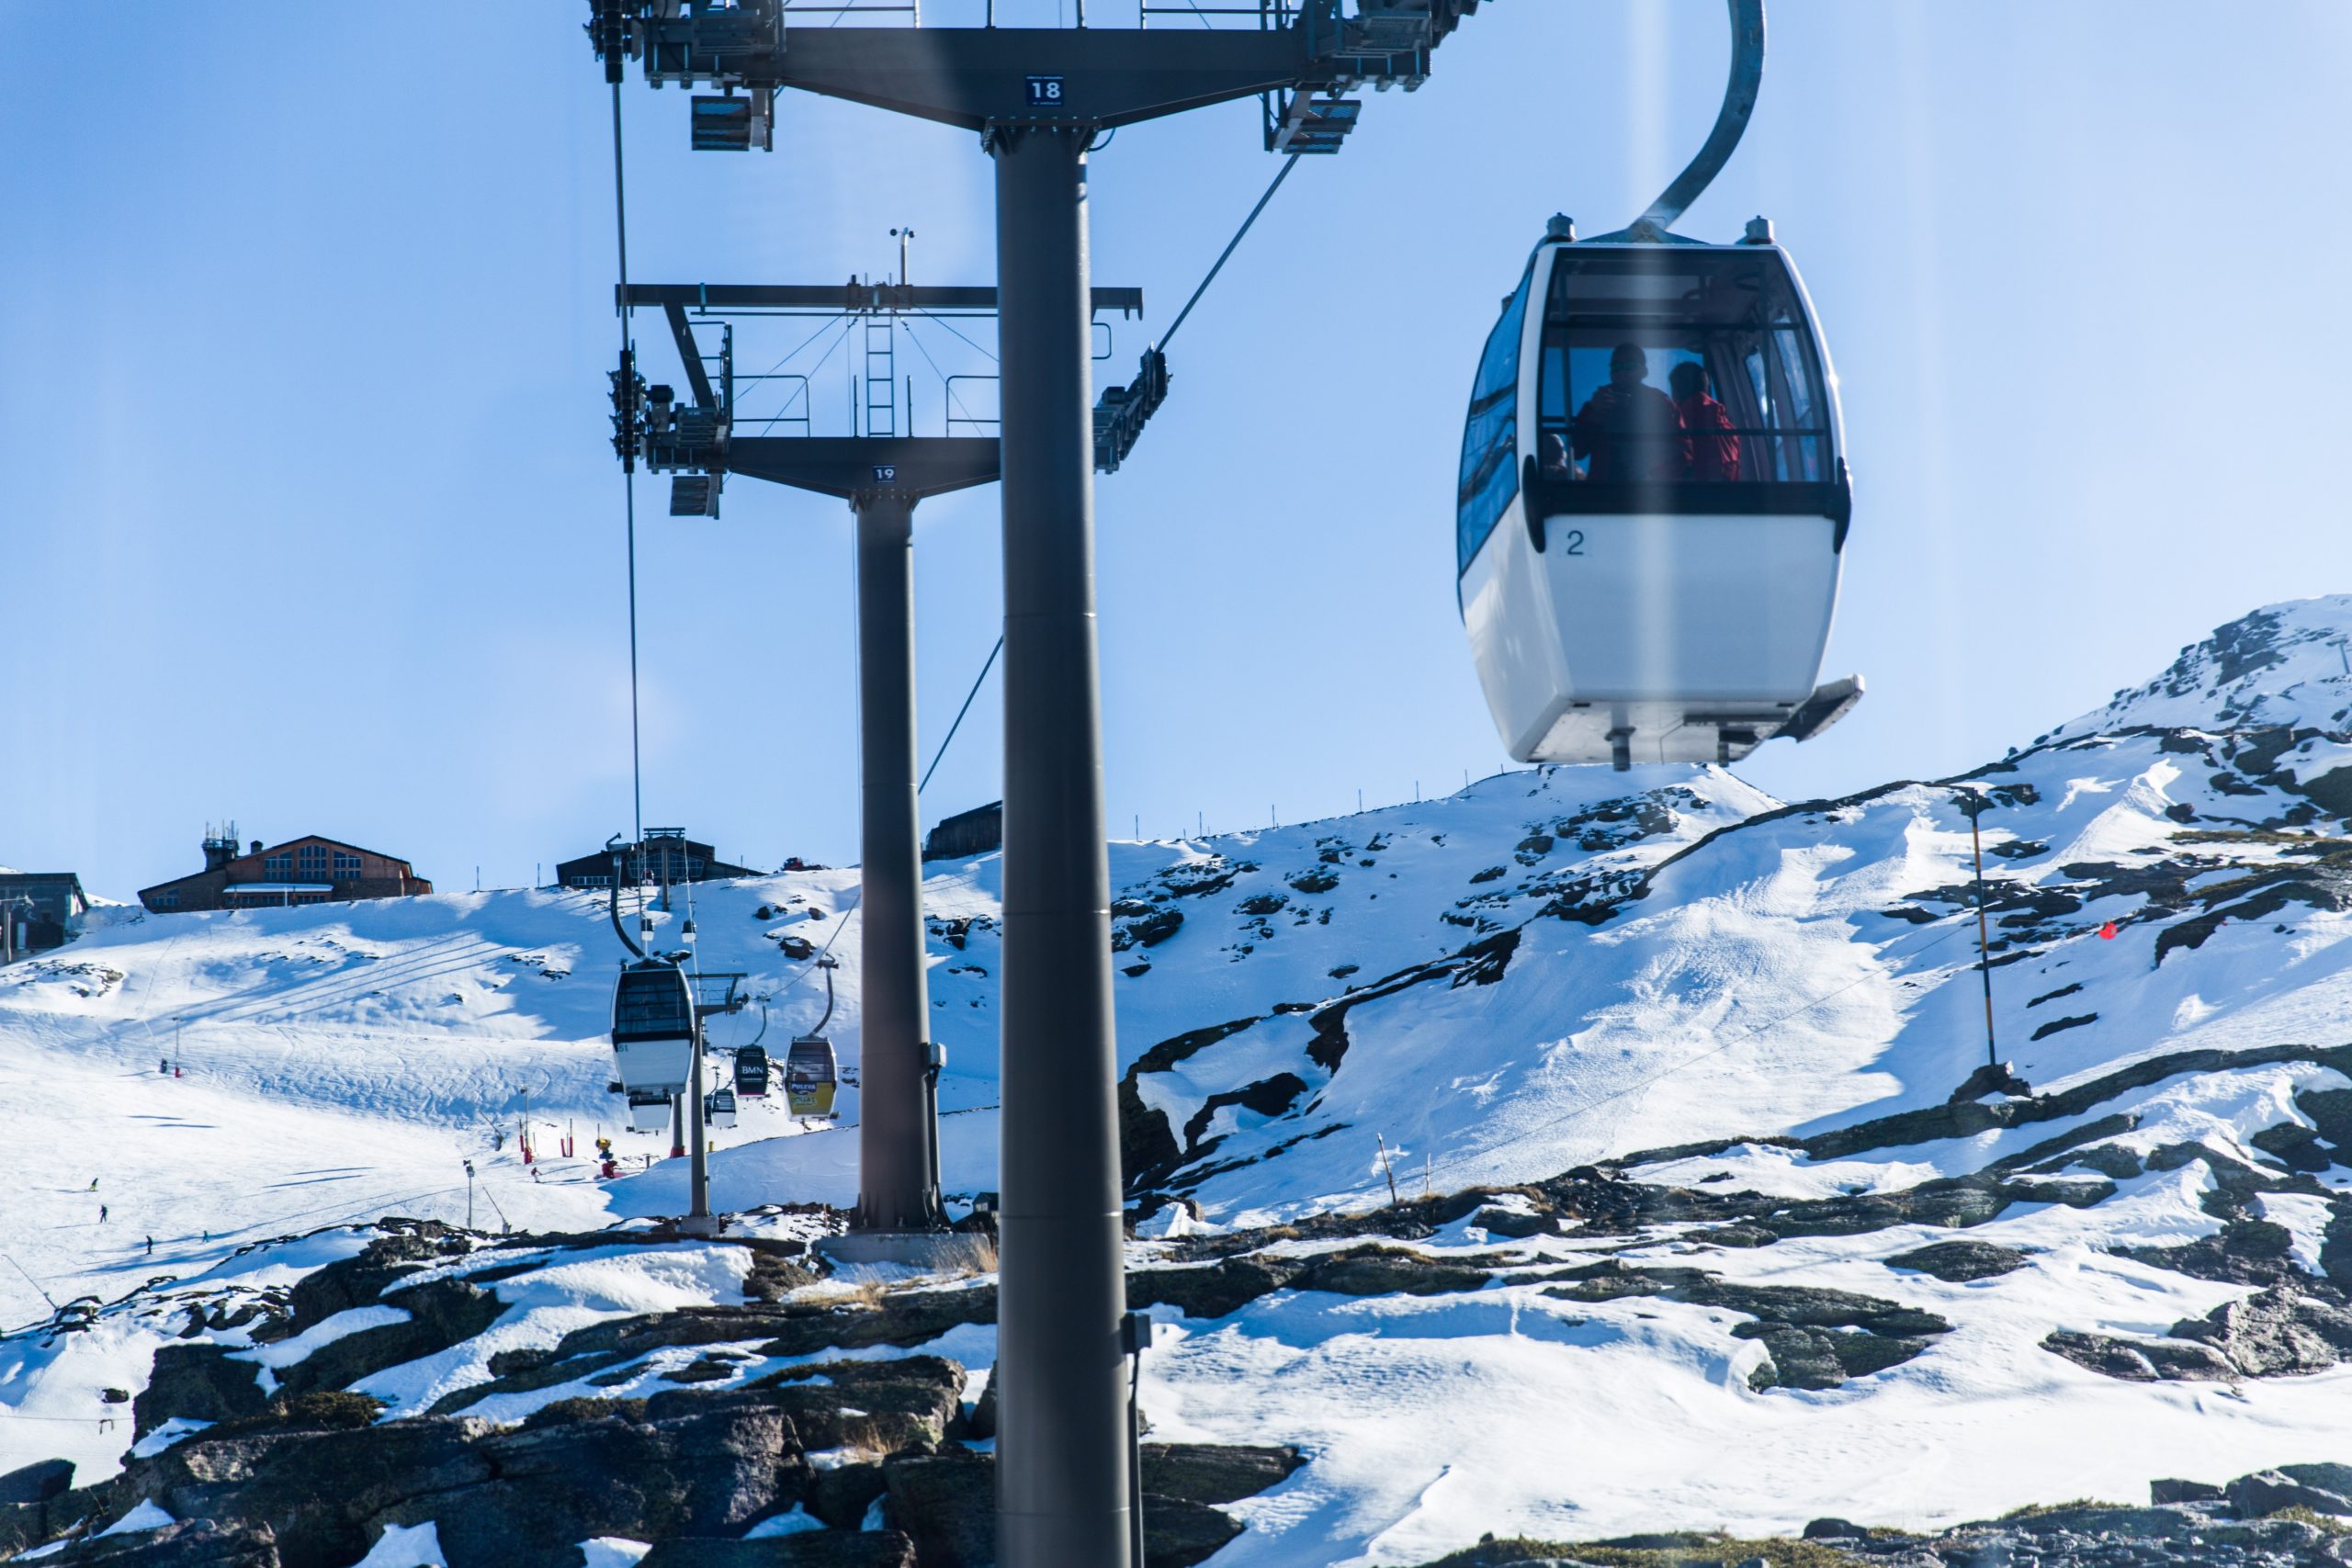 los centros de esqui tienen clientes internacionales por lo que una traducción puede ayudar a atraer a más clientes